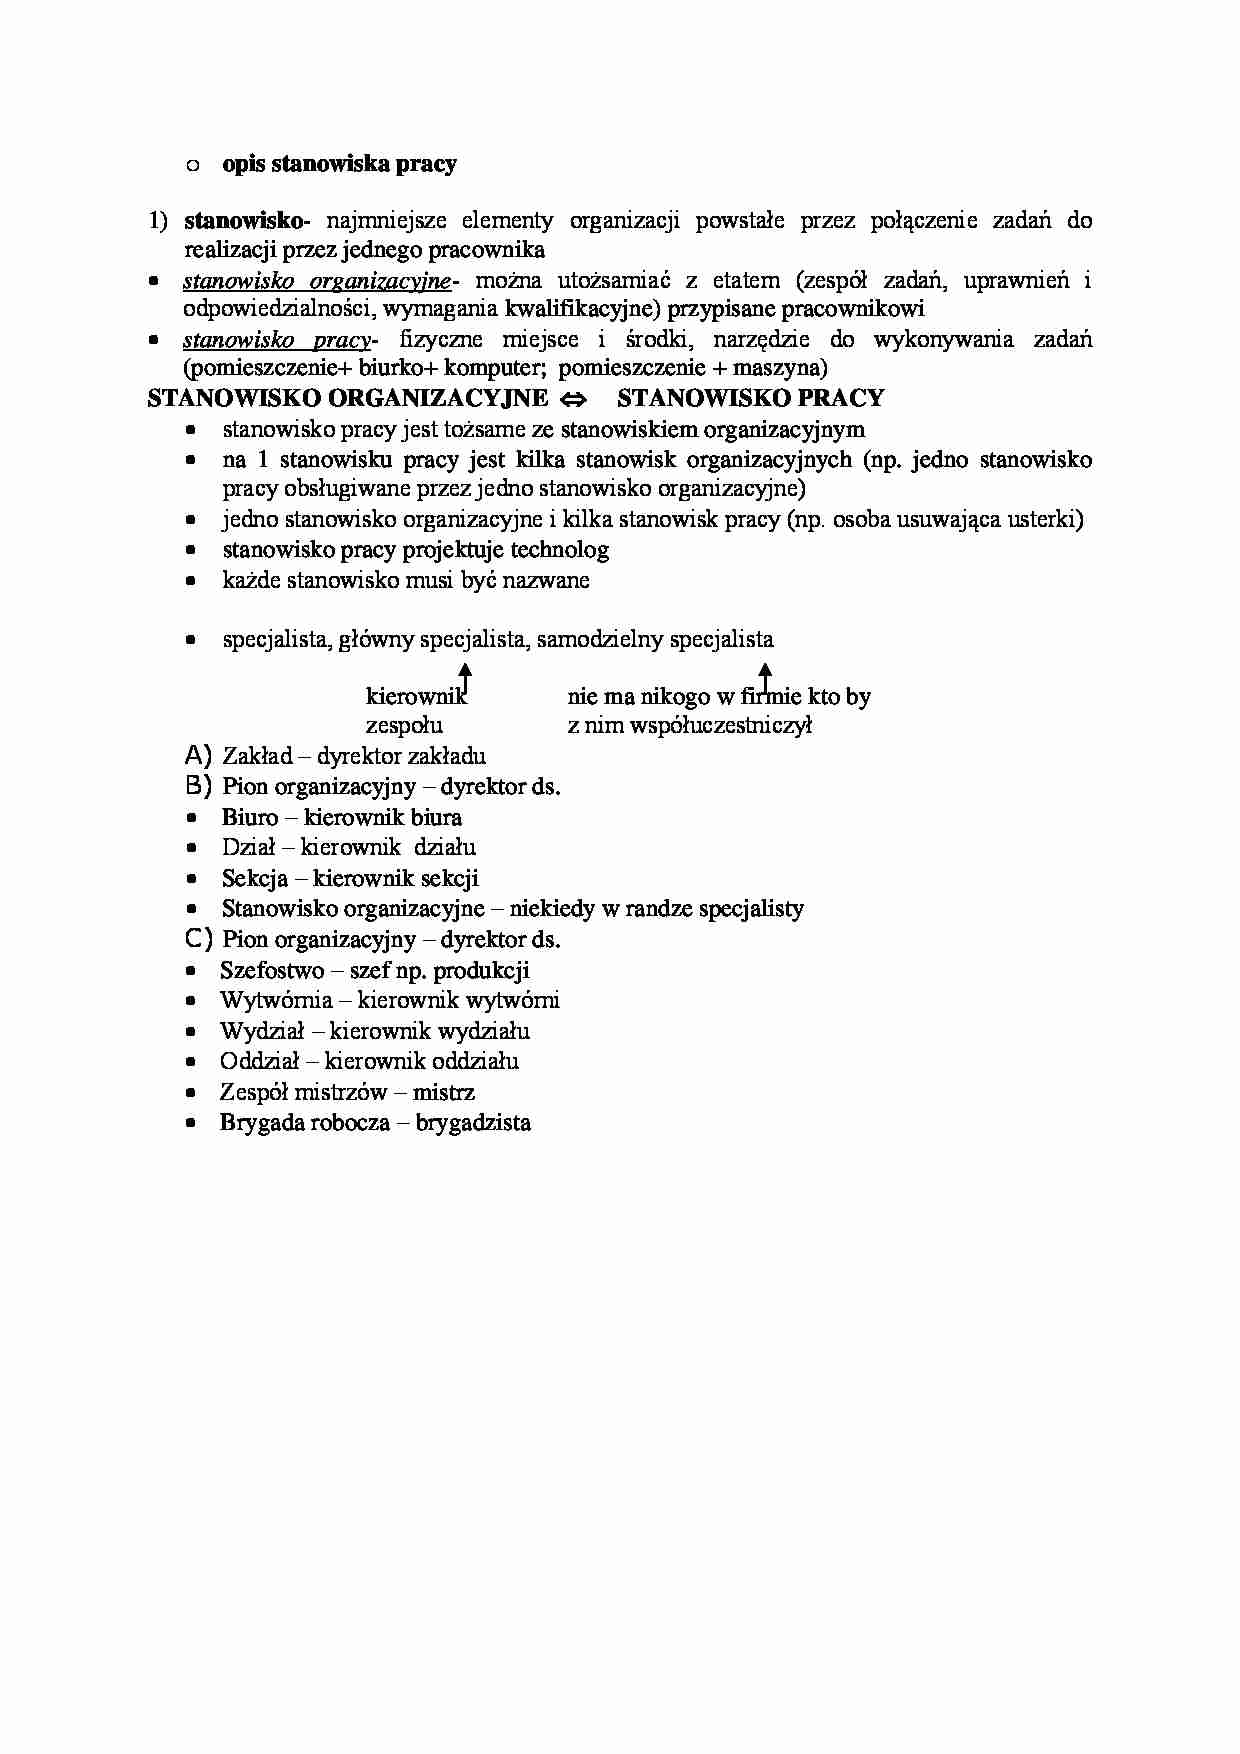 Opis stanowiska pracy - stanowisko organizacyjne - strona 1